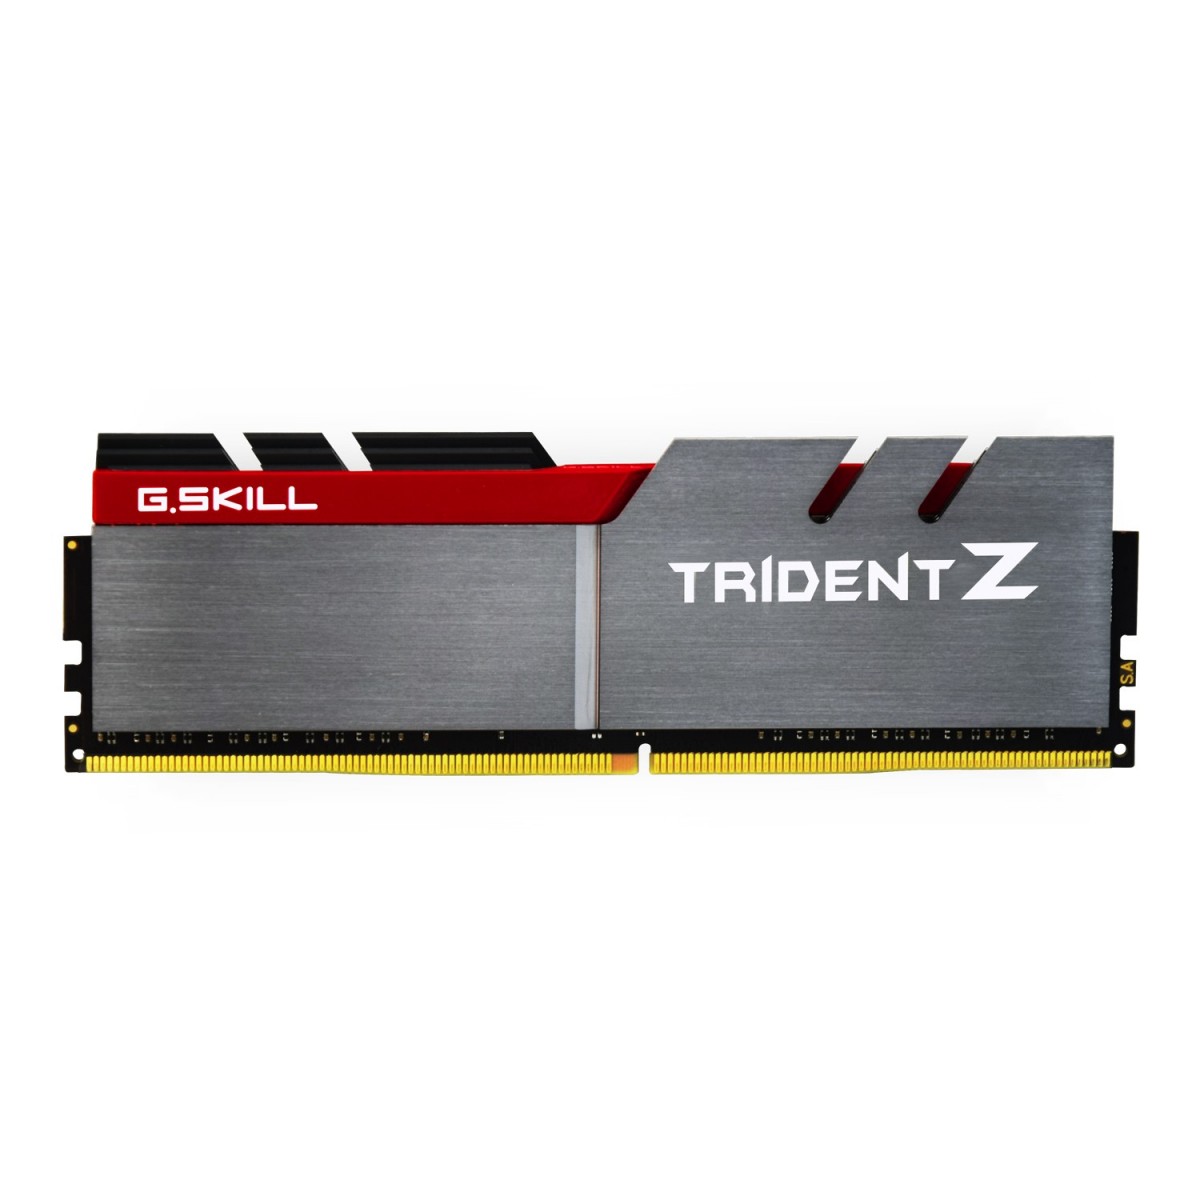 G.Skill Trident Z 64GB DDR4-3200Mhz - 64 GB - 4 x 16 GB - DDR4 - 3200 MHz - 288-pin DIMM - Aluminium - Red